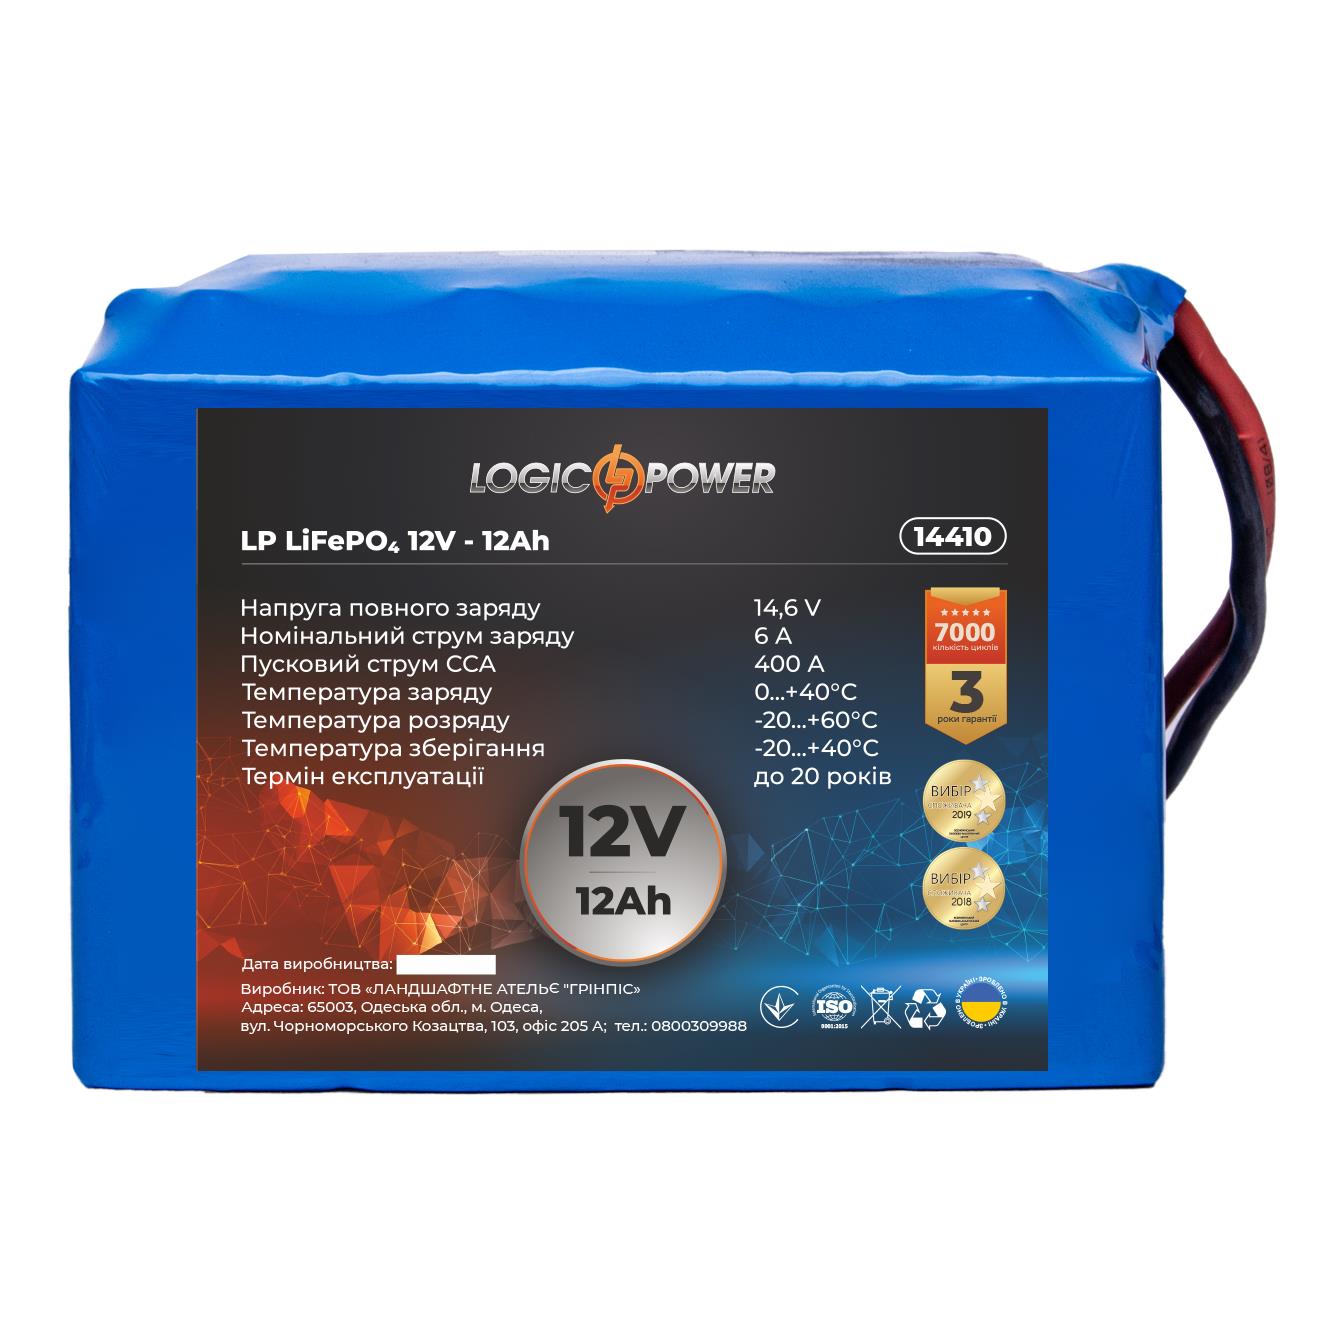 Акумулятор літій-залізо-фосфатний LogicPower LP LiFePO4 12V - 12 Ah для мопеда (14410) в інтернет-магазині, головне фото